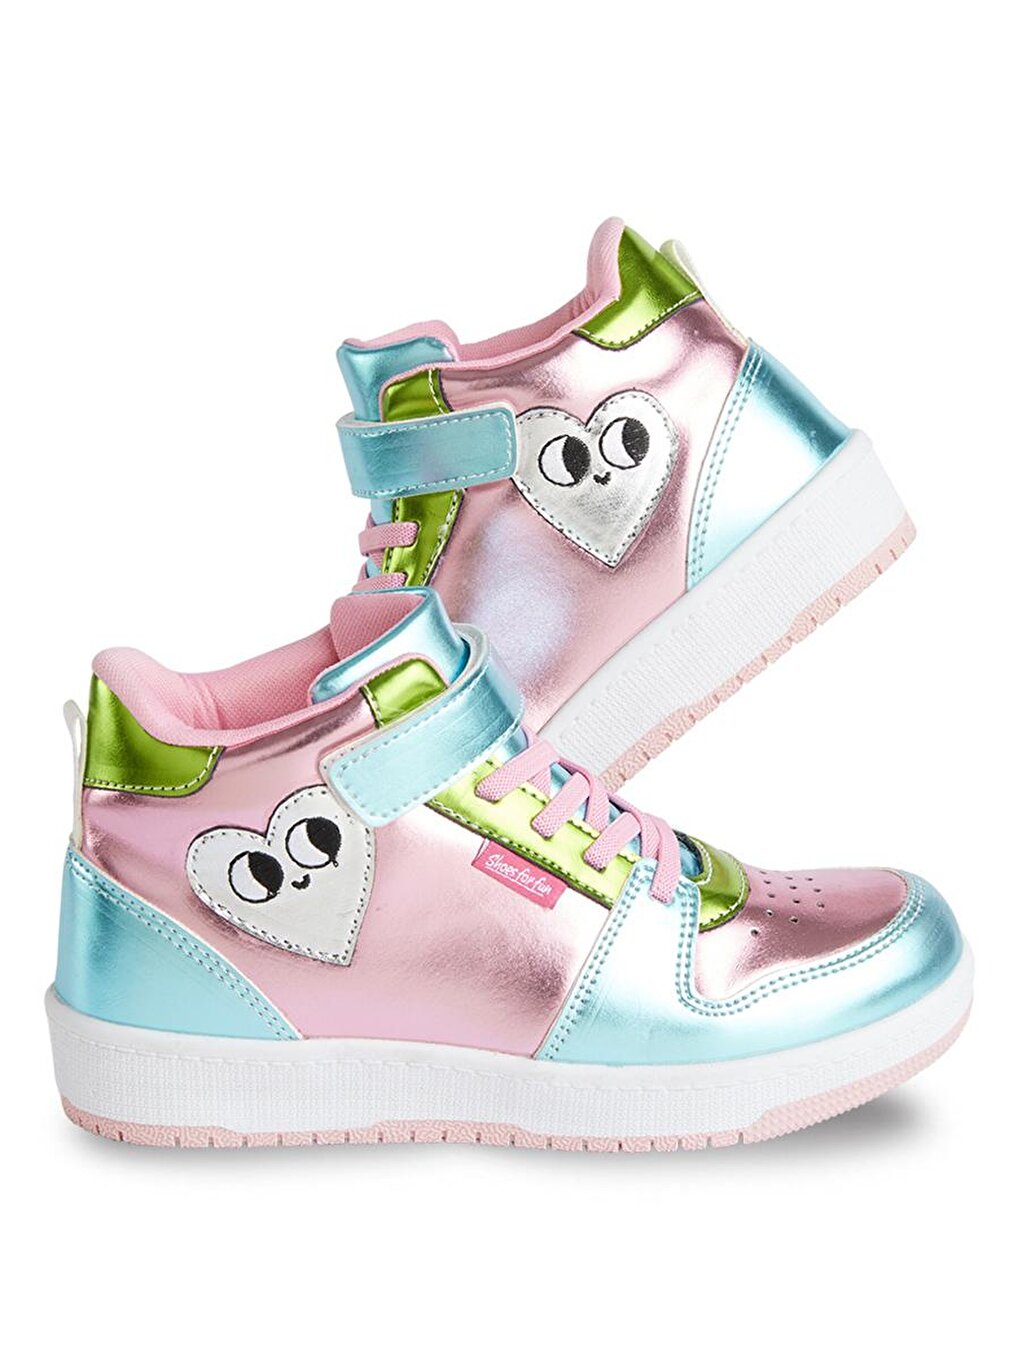 Розовые кроссовки для девочек с голограммой сердца Denokids цена и фото